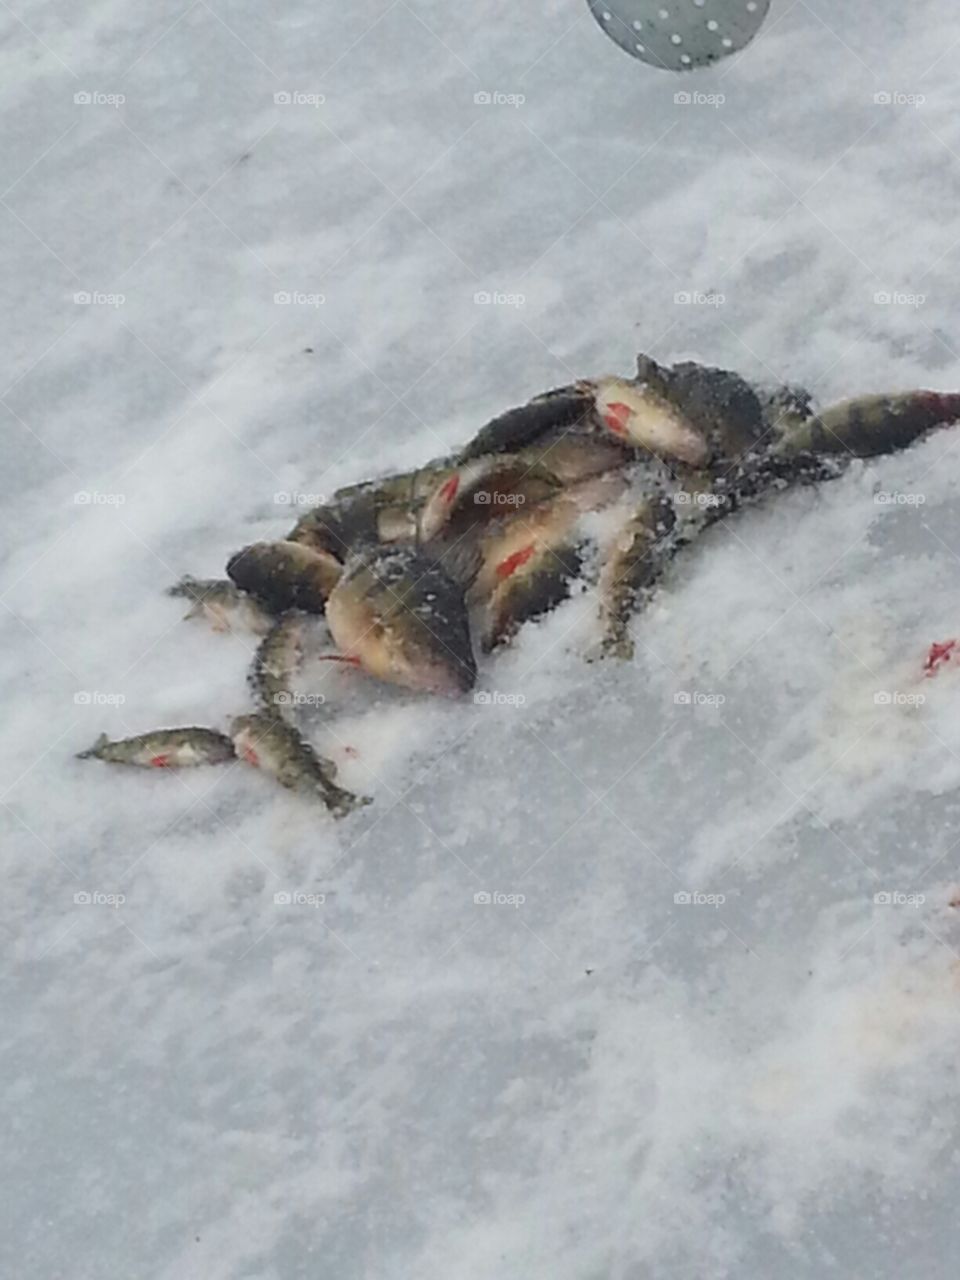 Dead ice fish 